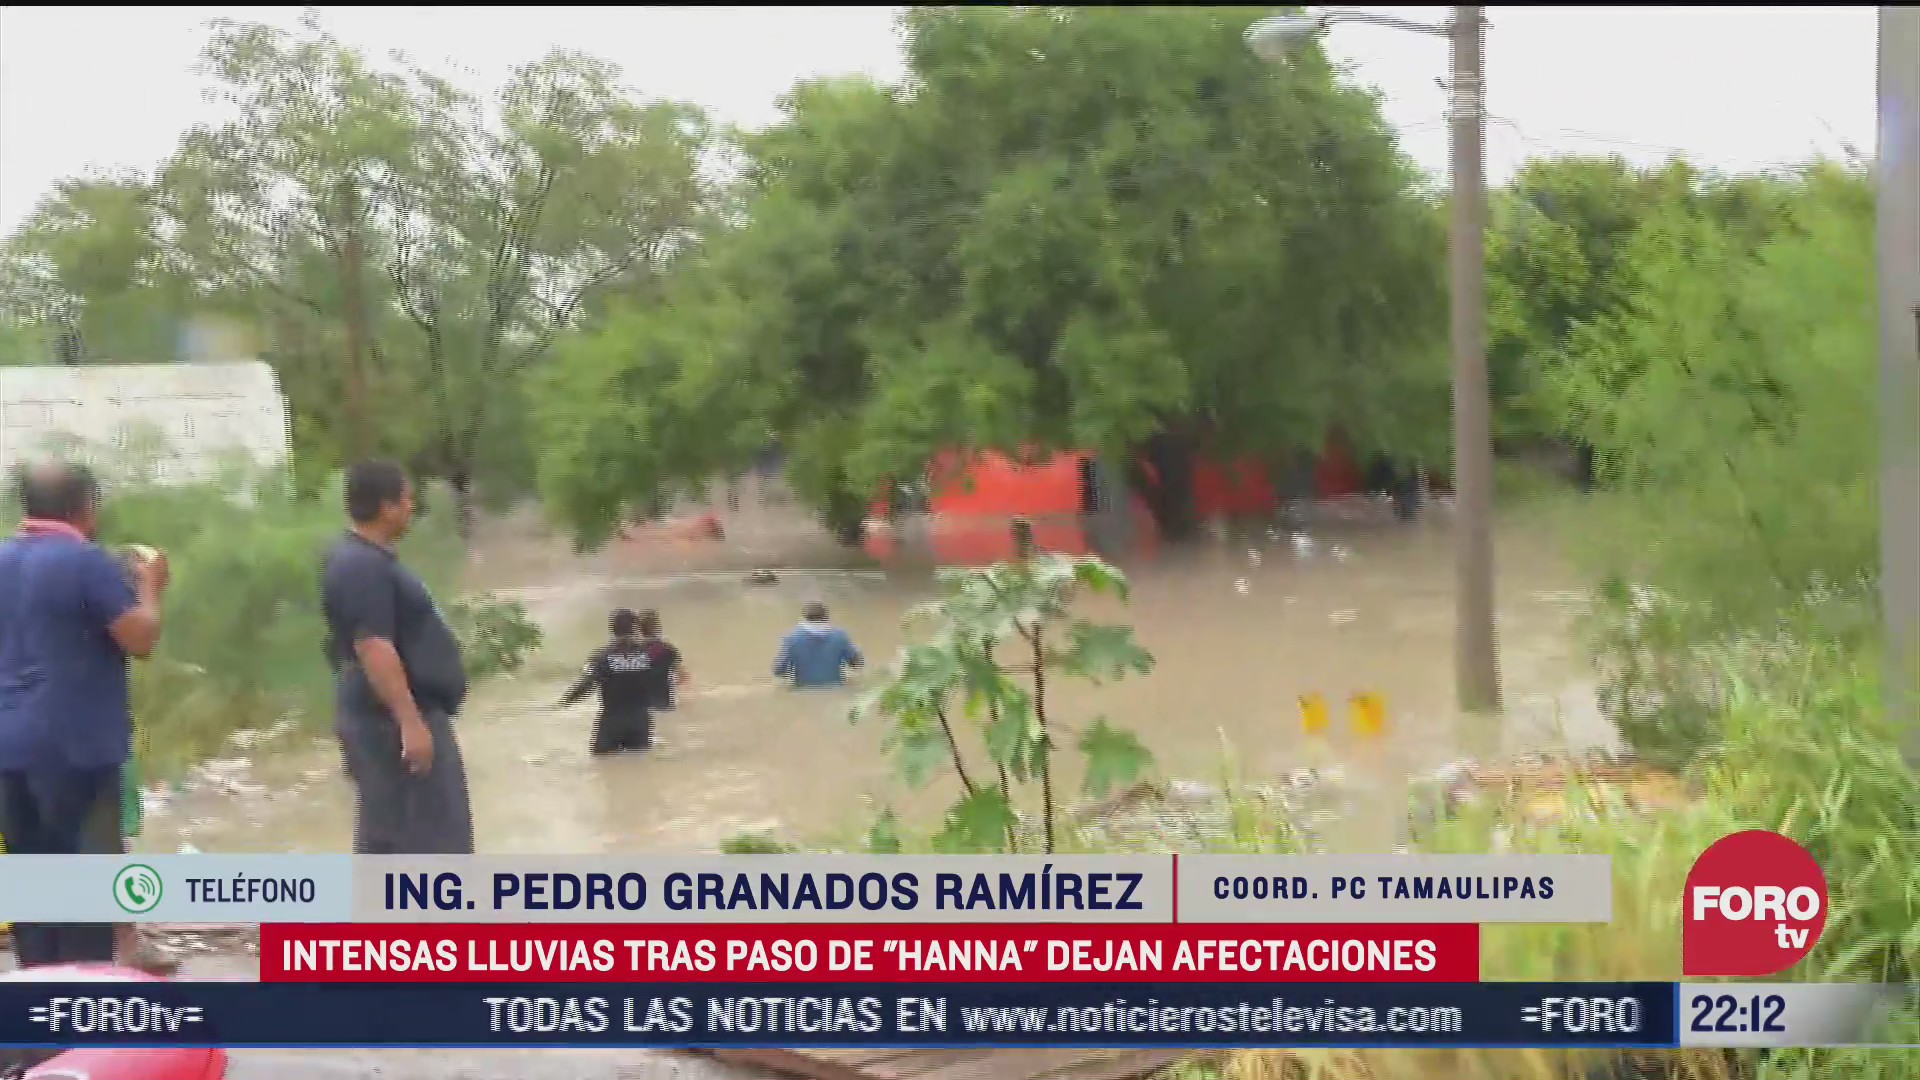 FOTO: 26 de julio 2020, cerca de 40 colonias de reynosa tamaulipas resultan con afectaciones por hanna